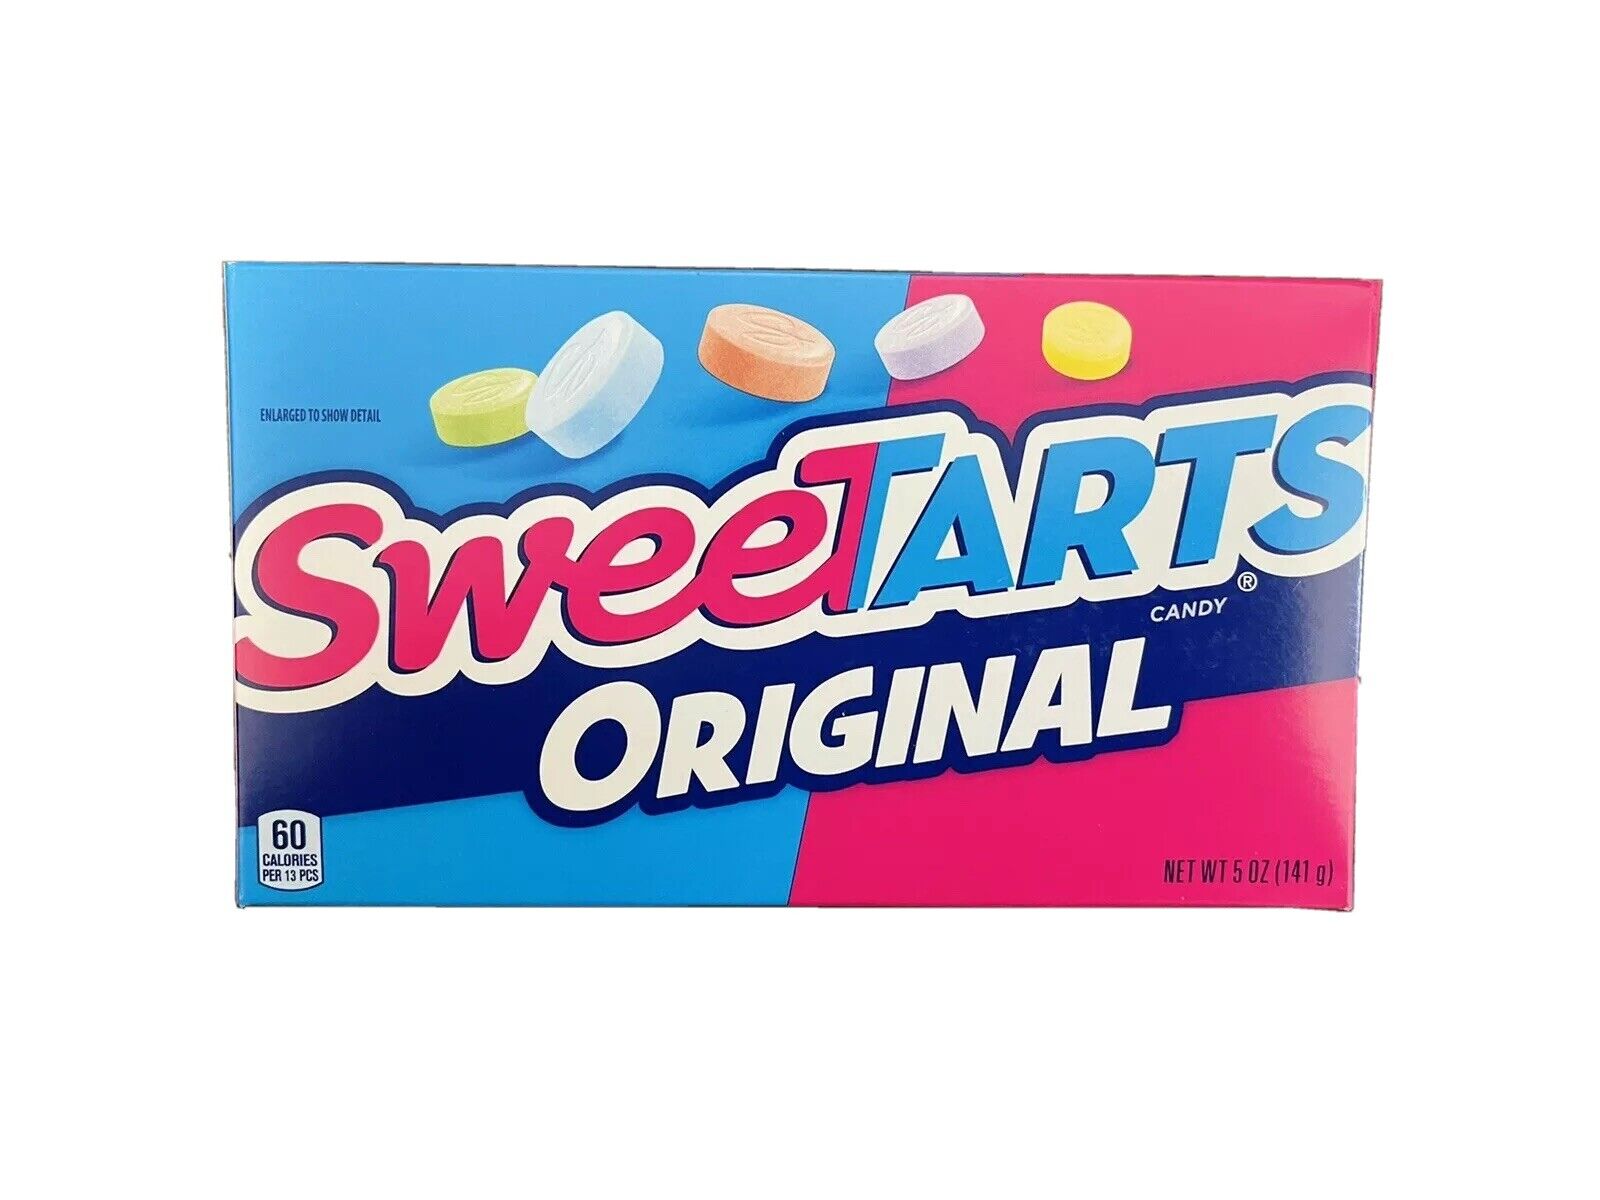 Sweetarts Original Candy 141g